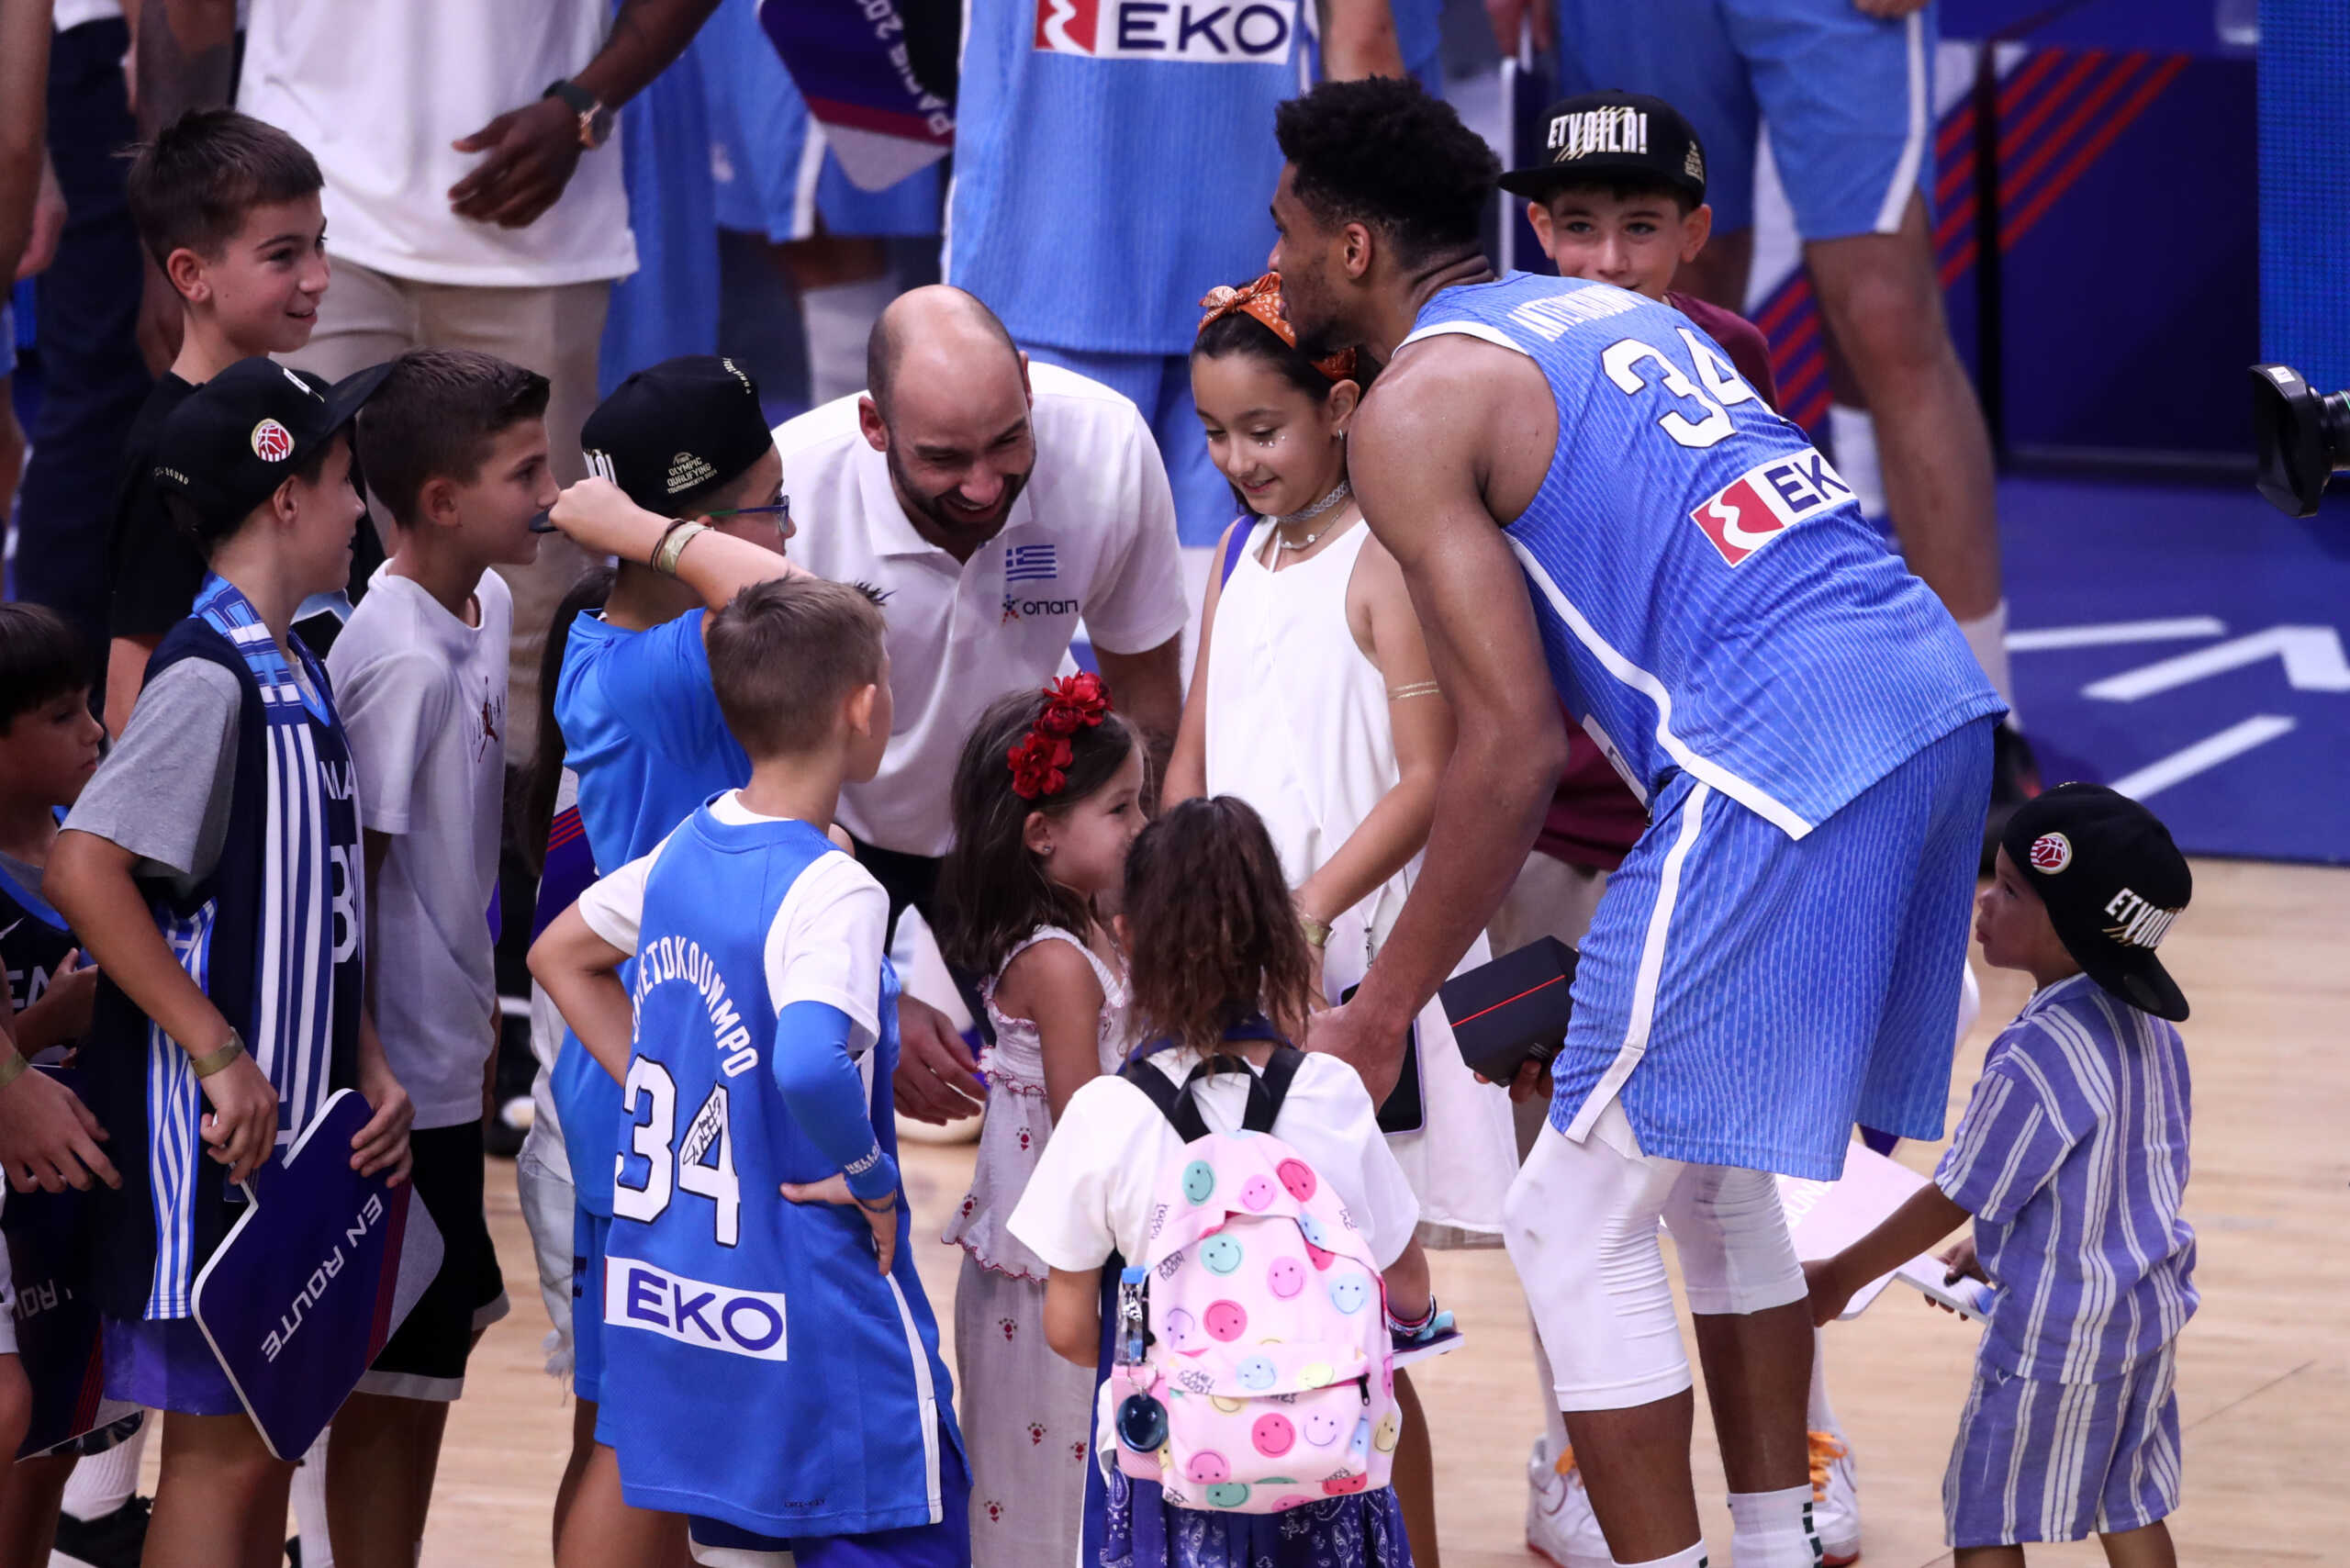 Εθνική μπάσκετ: Γιάννης Αντετοκούνμπο και Βασίλης Σπανούλης πανηγύρισαν με τα παιδιά τους στο παρκέ